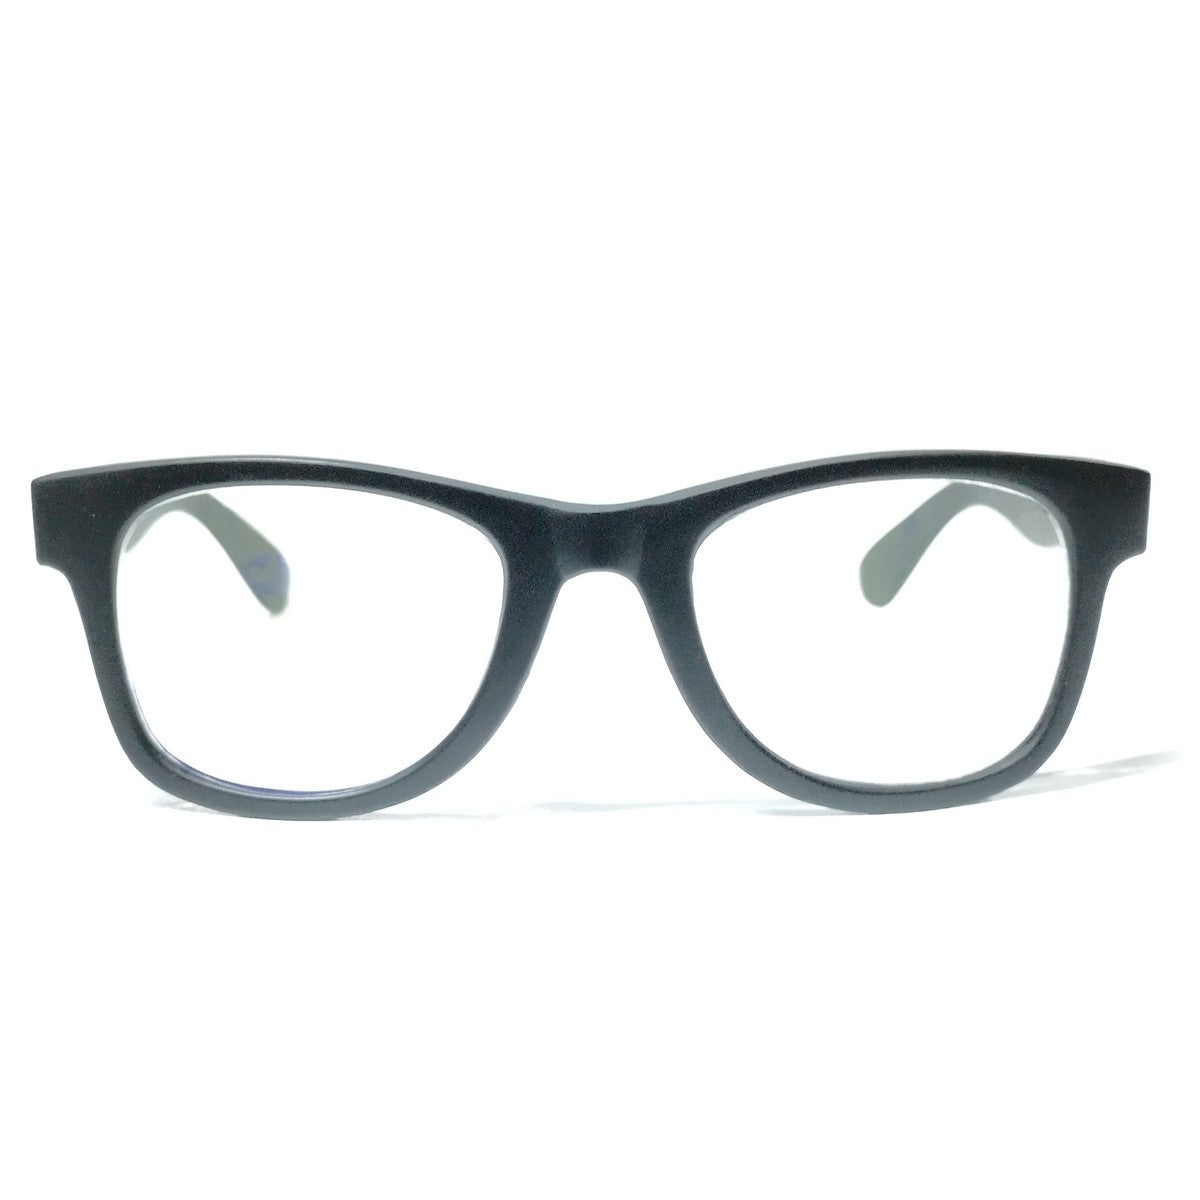 Premium Matt Black Progressive Glasses for Computers Multifocal Reading Glasses for Men Women